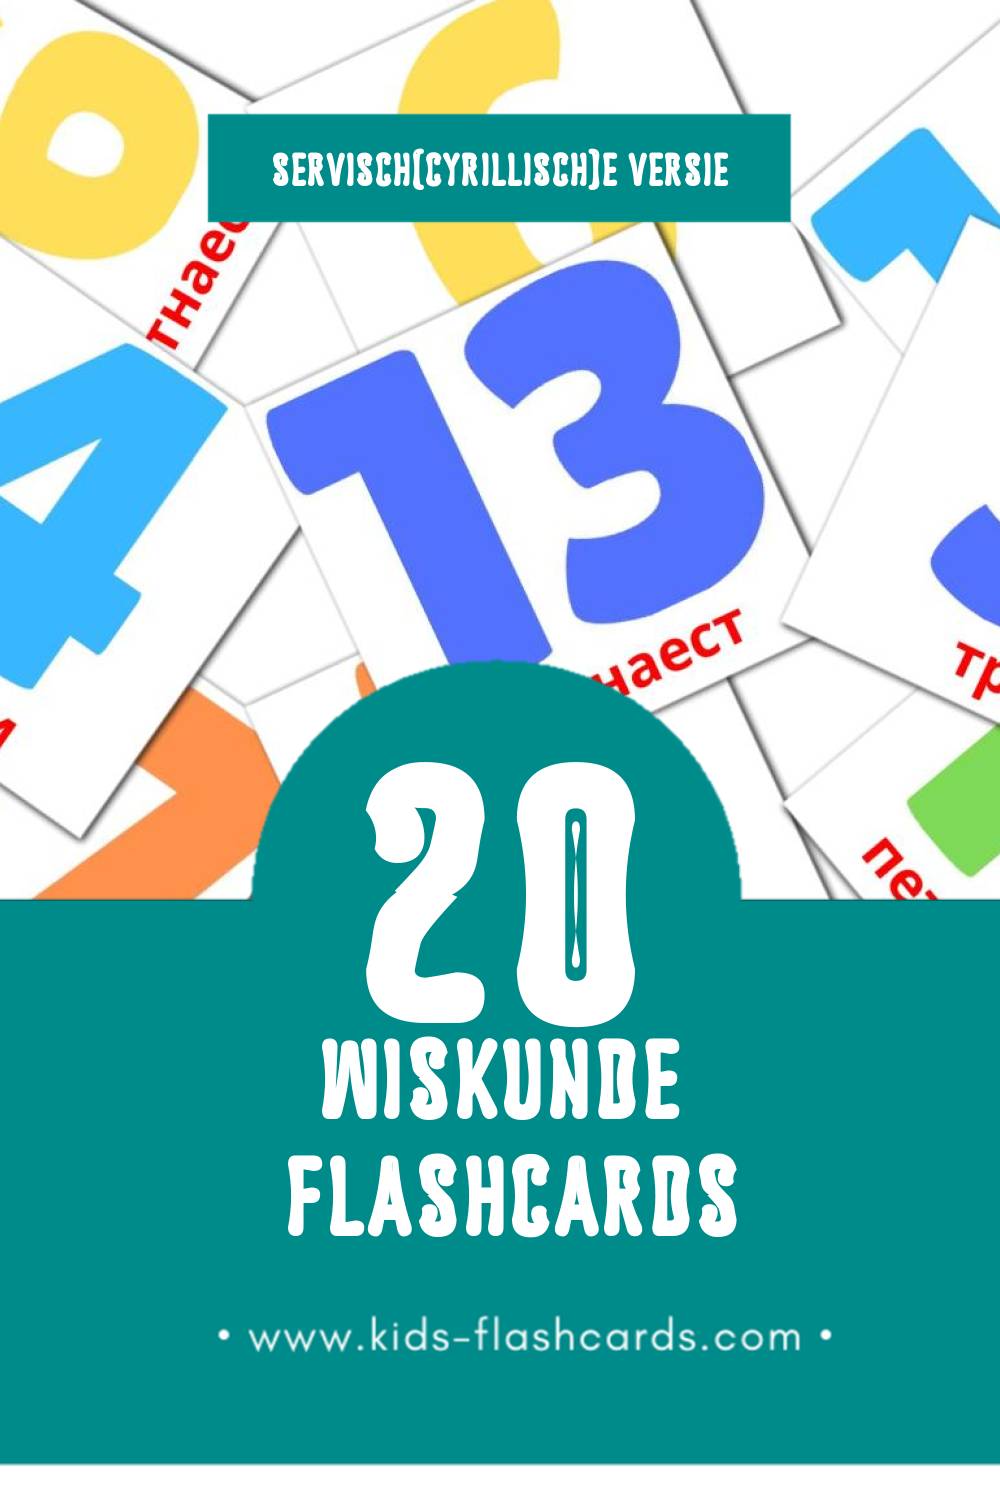 Visuele Математика Flashcards voor Kleuters (20 kaarten in het Servisch(cyrillisch))